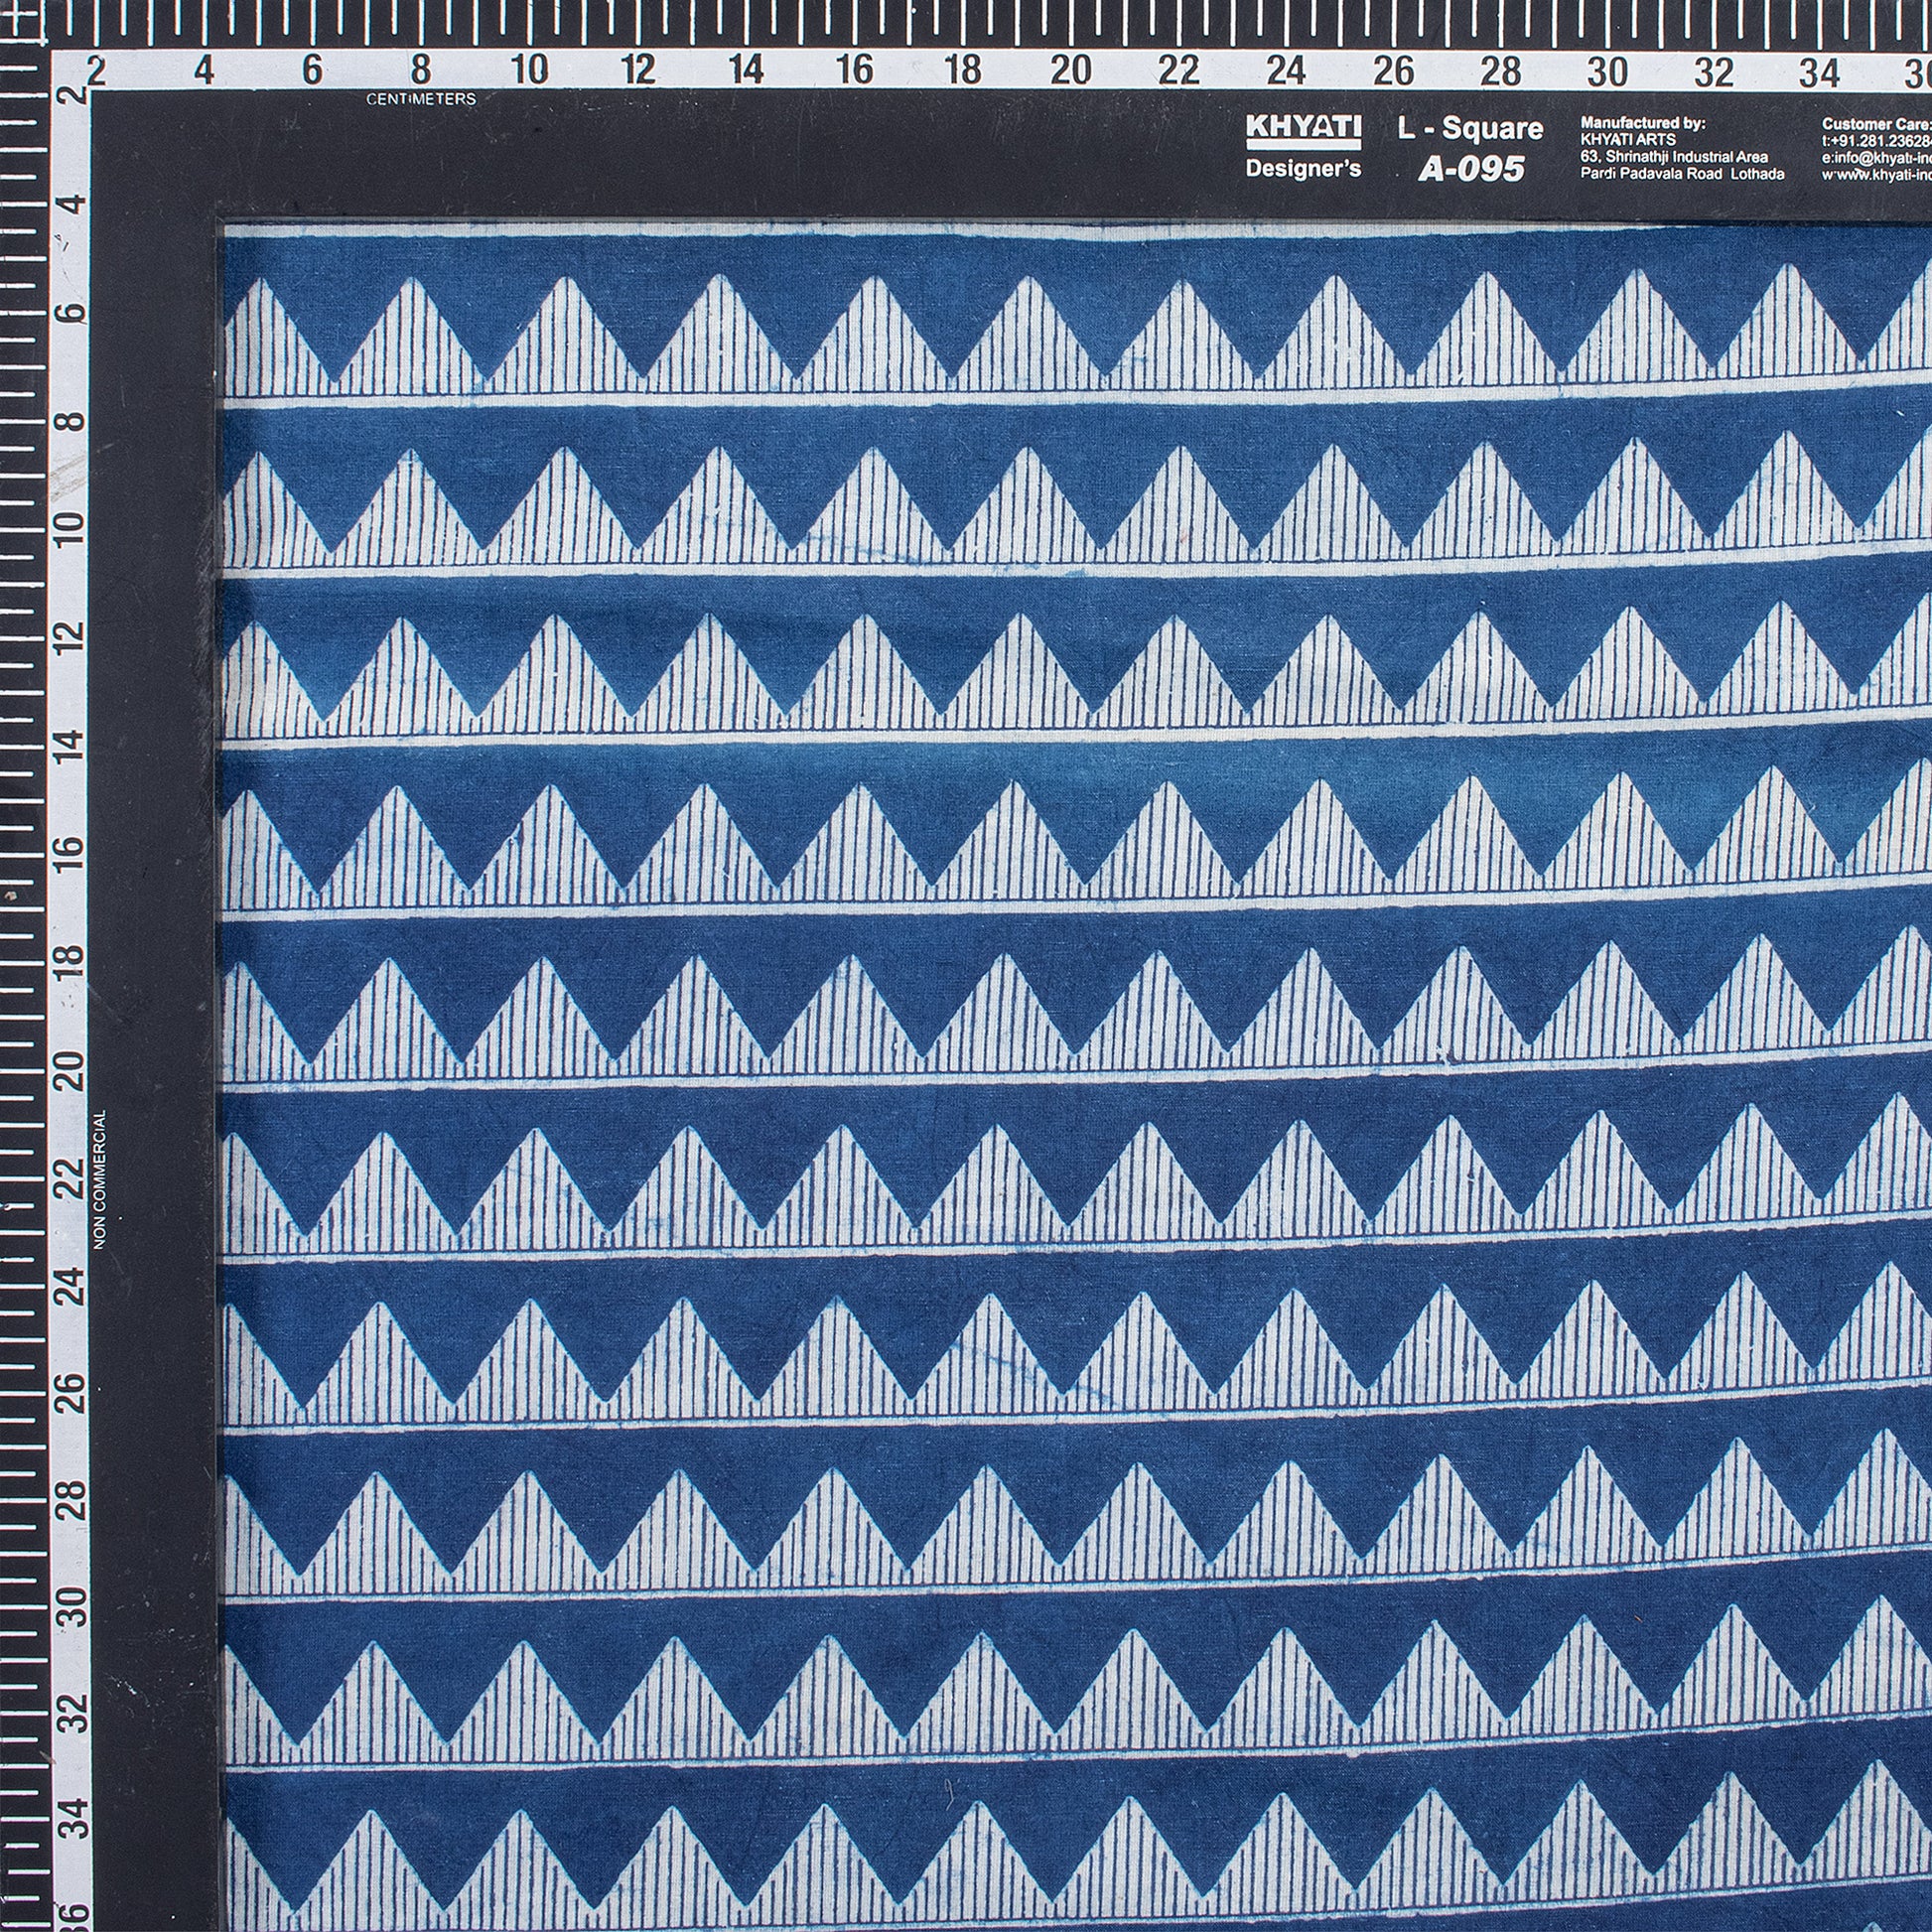 Indigo Material Fabric